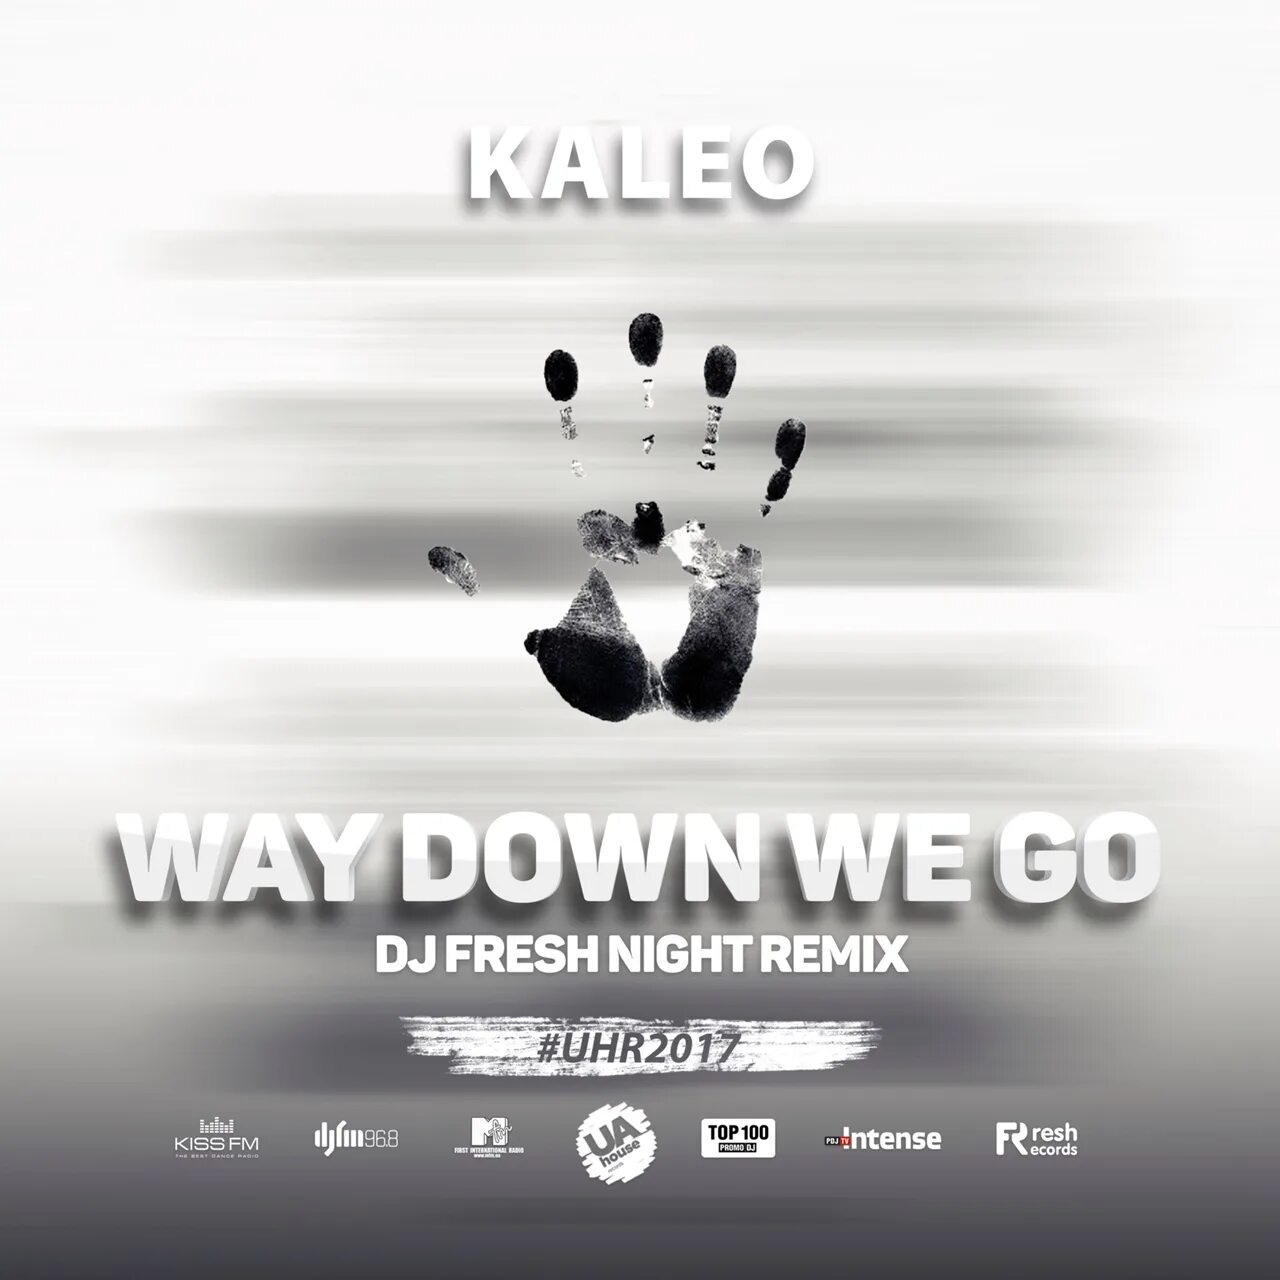 Way down we go. Kaleo альбомы. Way down we go обложка. Kaleo ab.